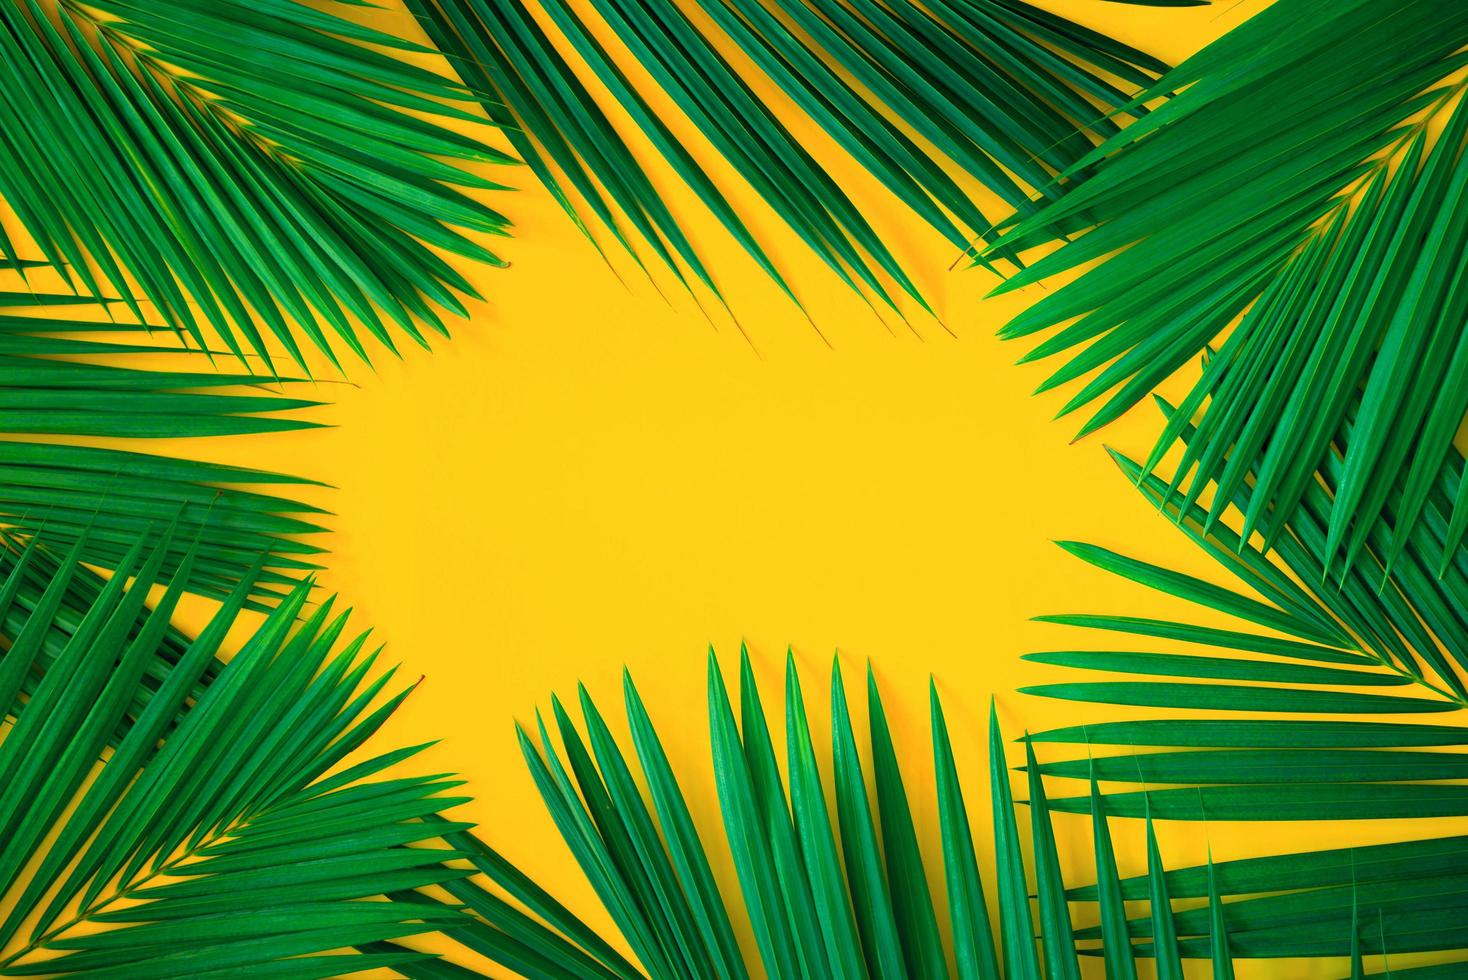 folhas de palmeira tropical verde sobre fundo amarelo brilhante. layout de natureza criativa feita de folhas. arte conceitual. conceito de verão, fundo de folha de palmeira tropical, espaço para texto. foto